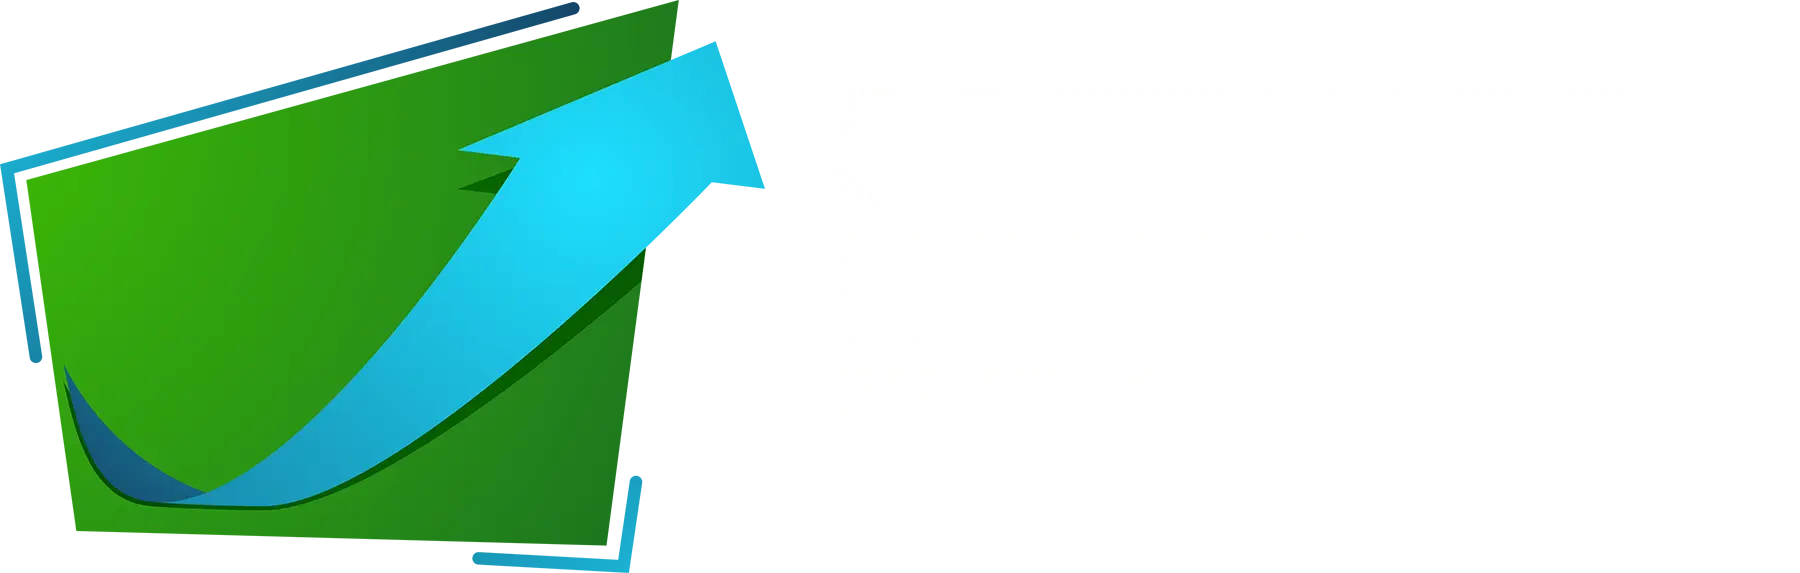 Software House Exponencial